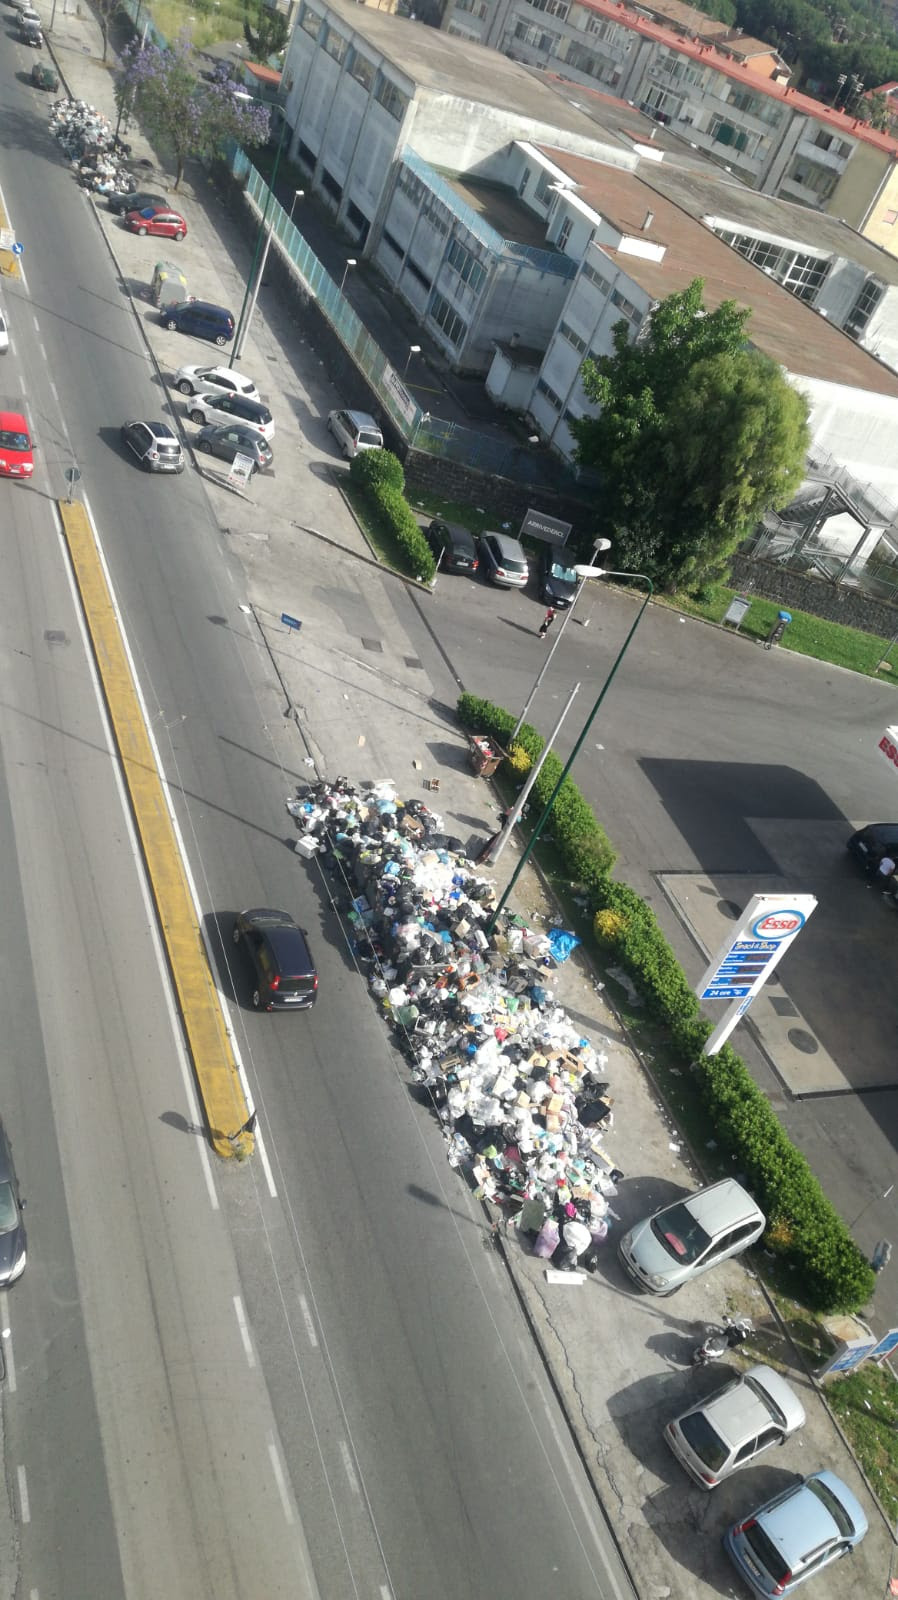 Napoli, emergenza rifiuti a Scampia, cumuli in strada: la spazzatura non viene raccolta da una settimana